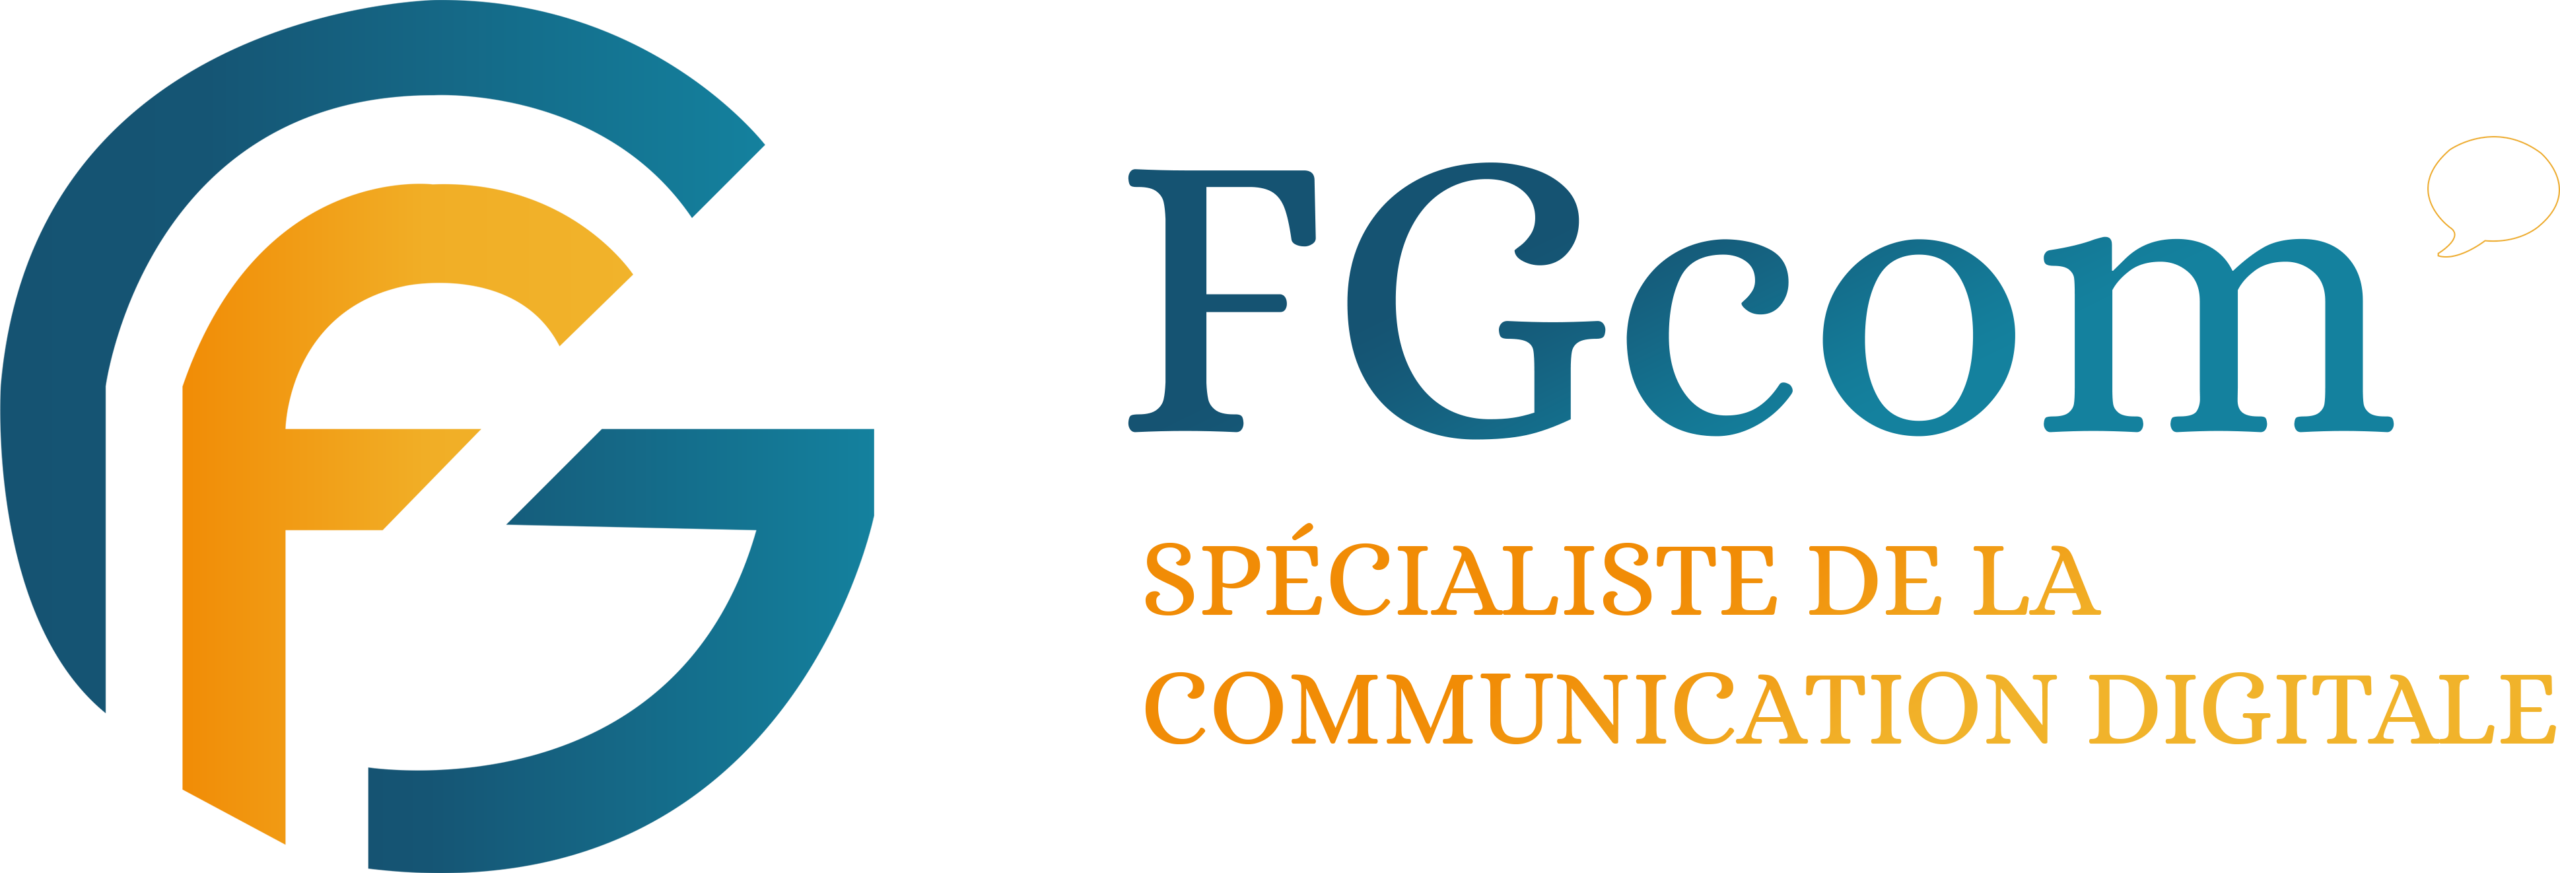 logo-FGcom